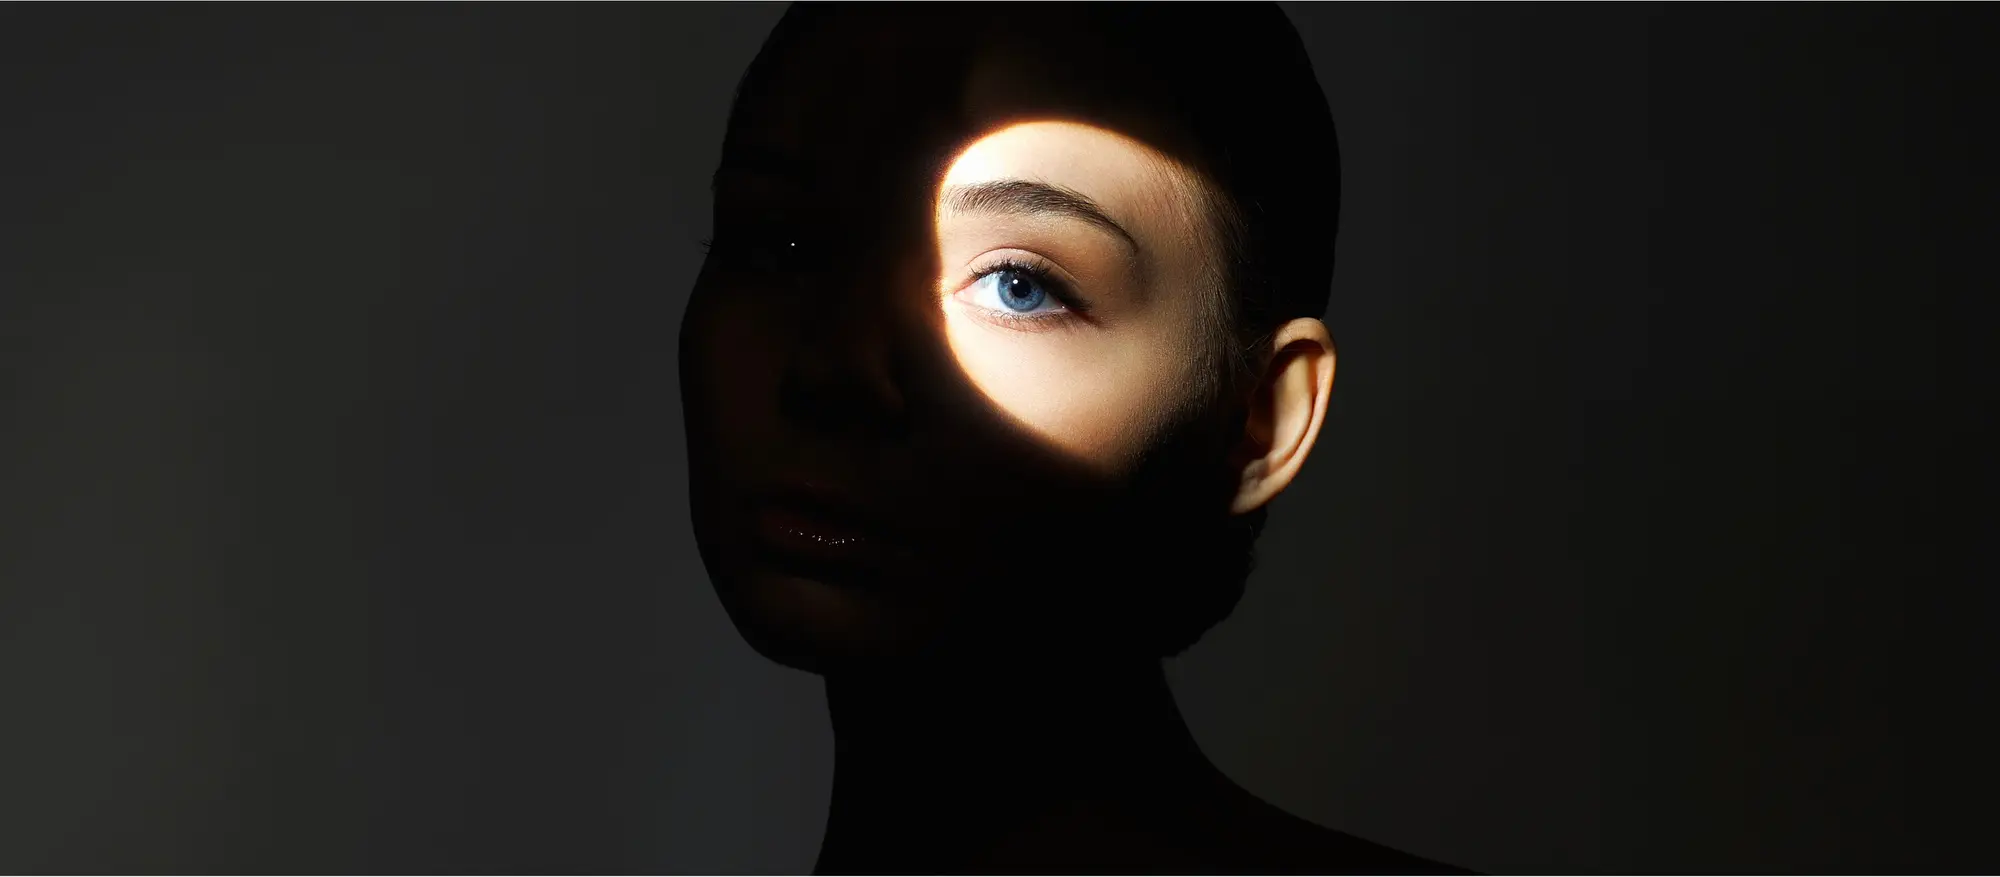 foto de uma mulher que só tem o olho iluminado